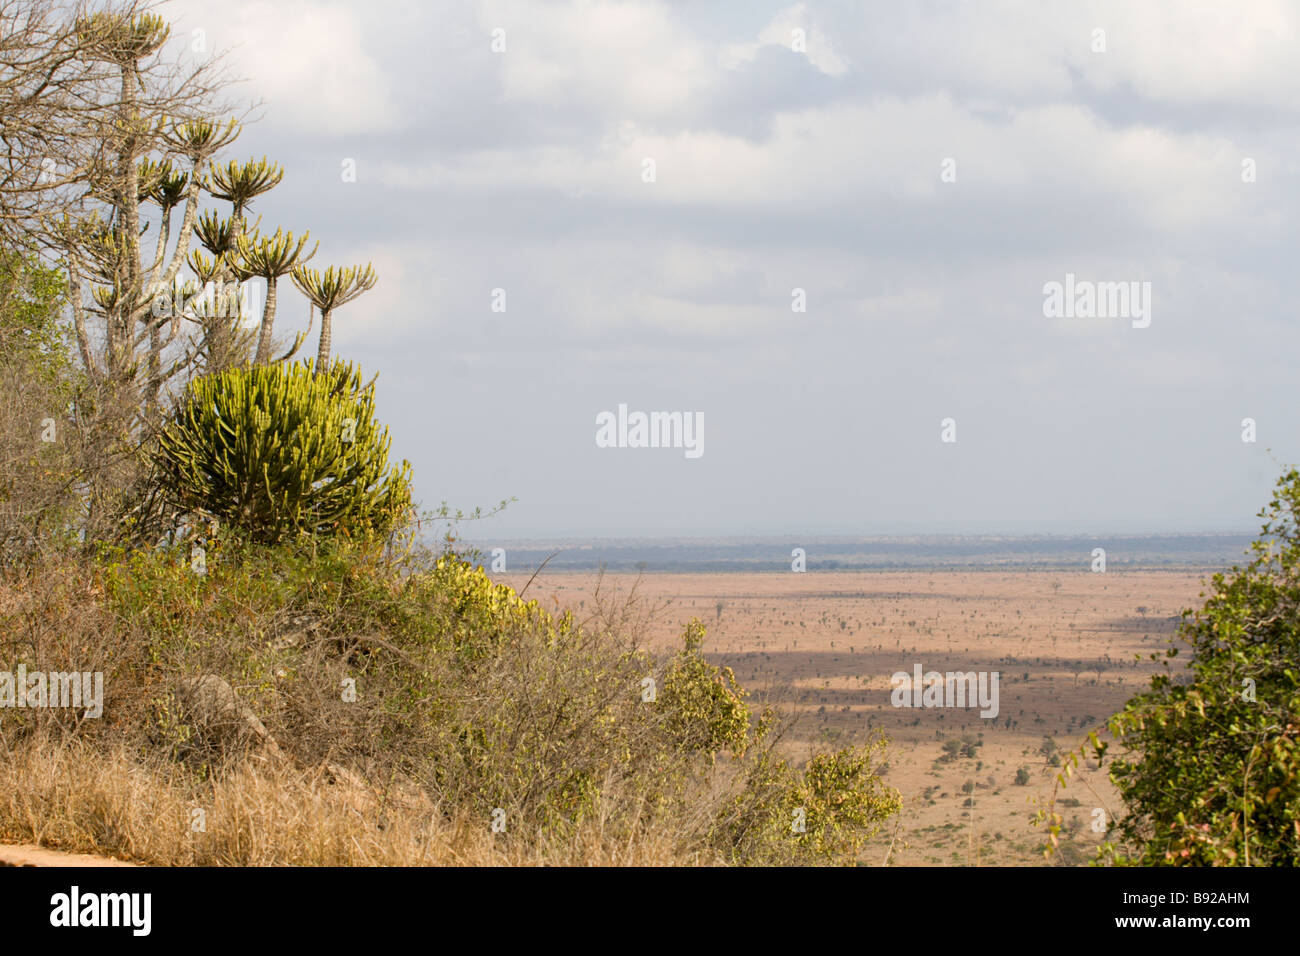 Árbol marula knobthorn Lebombo sabana arbolada sistema eco Parque Nacional Kruger Mpumalanga Provincia Sudáfrica Foto de stock